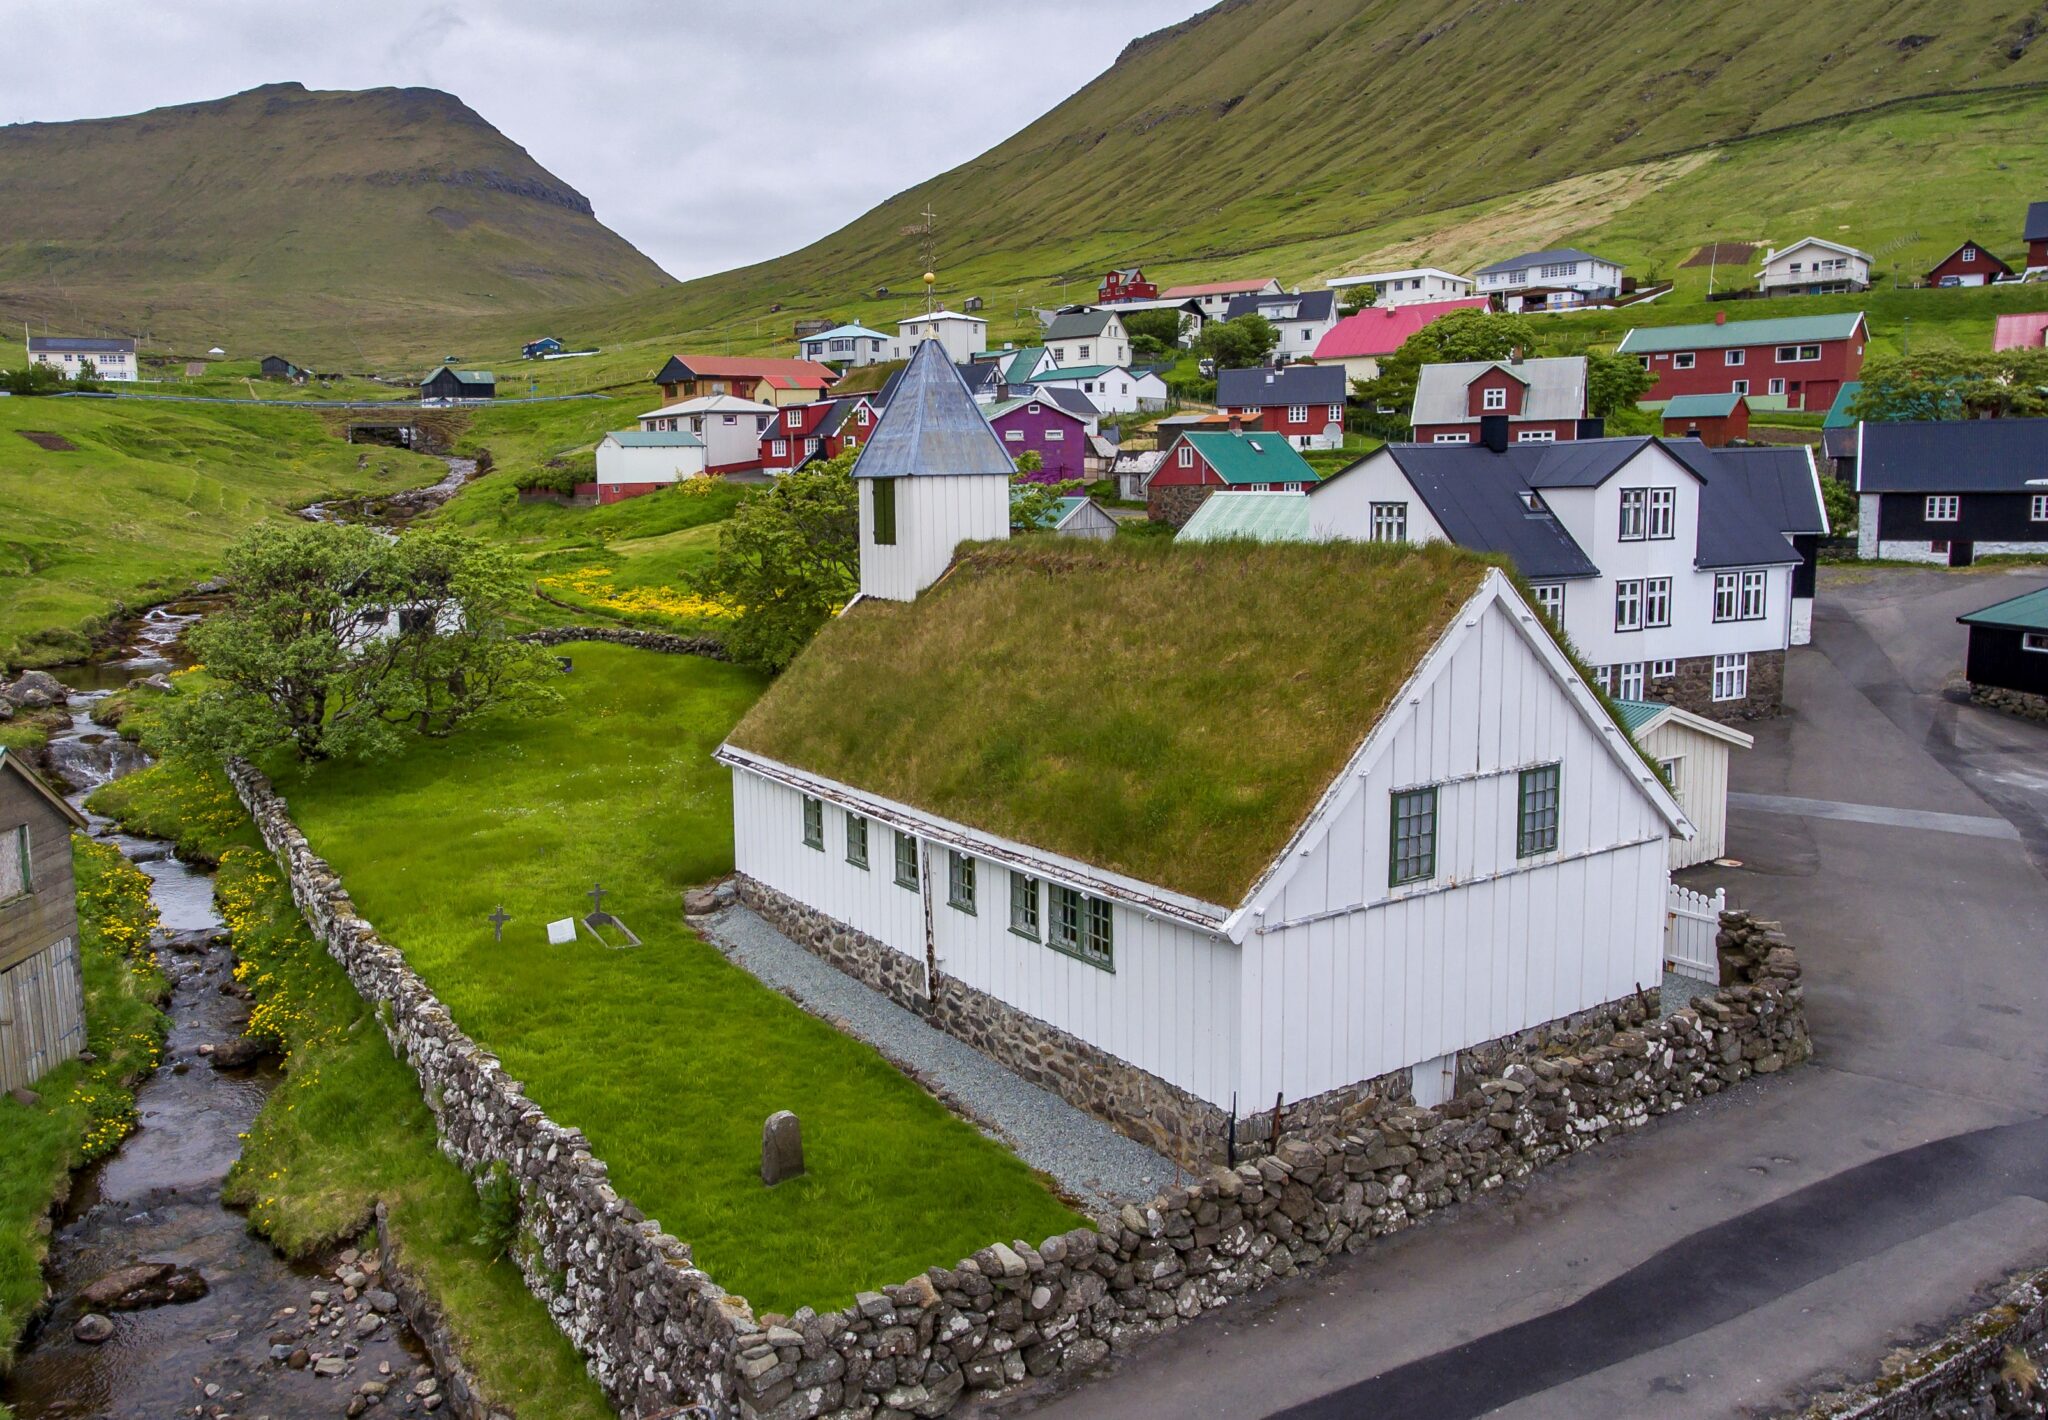 The church of Oyndafjørður